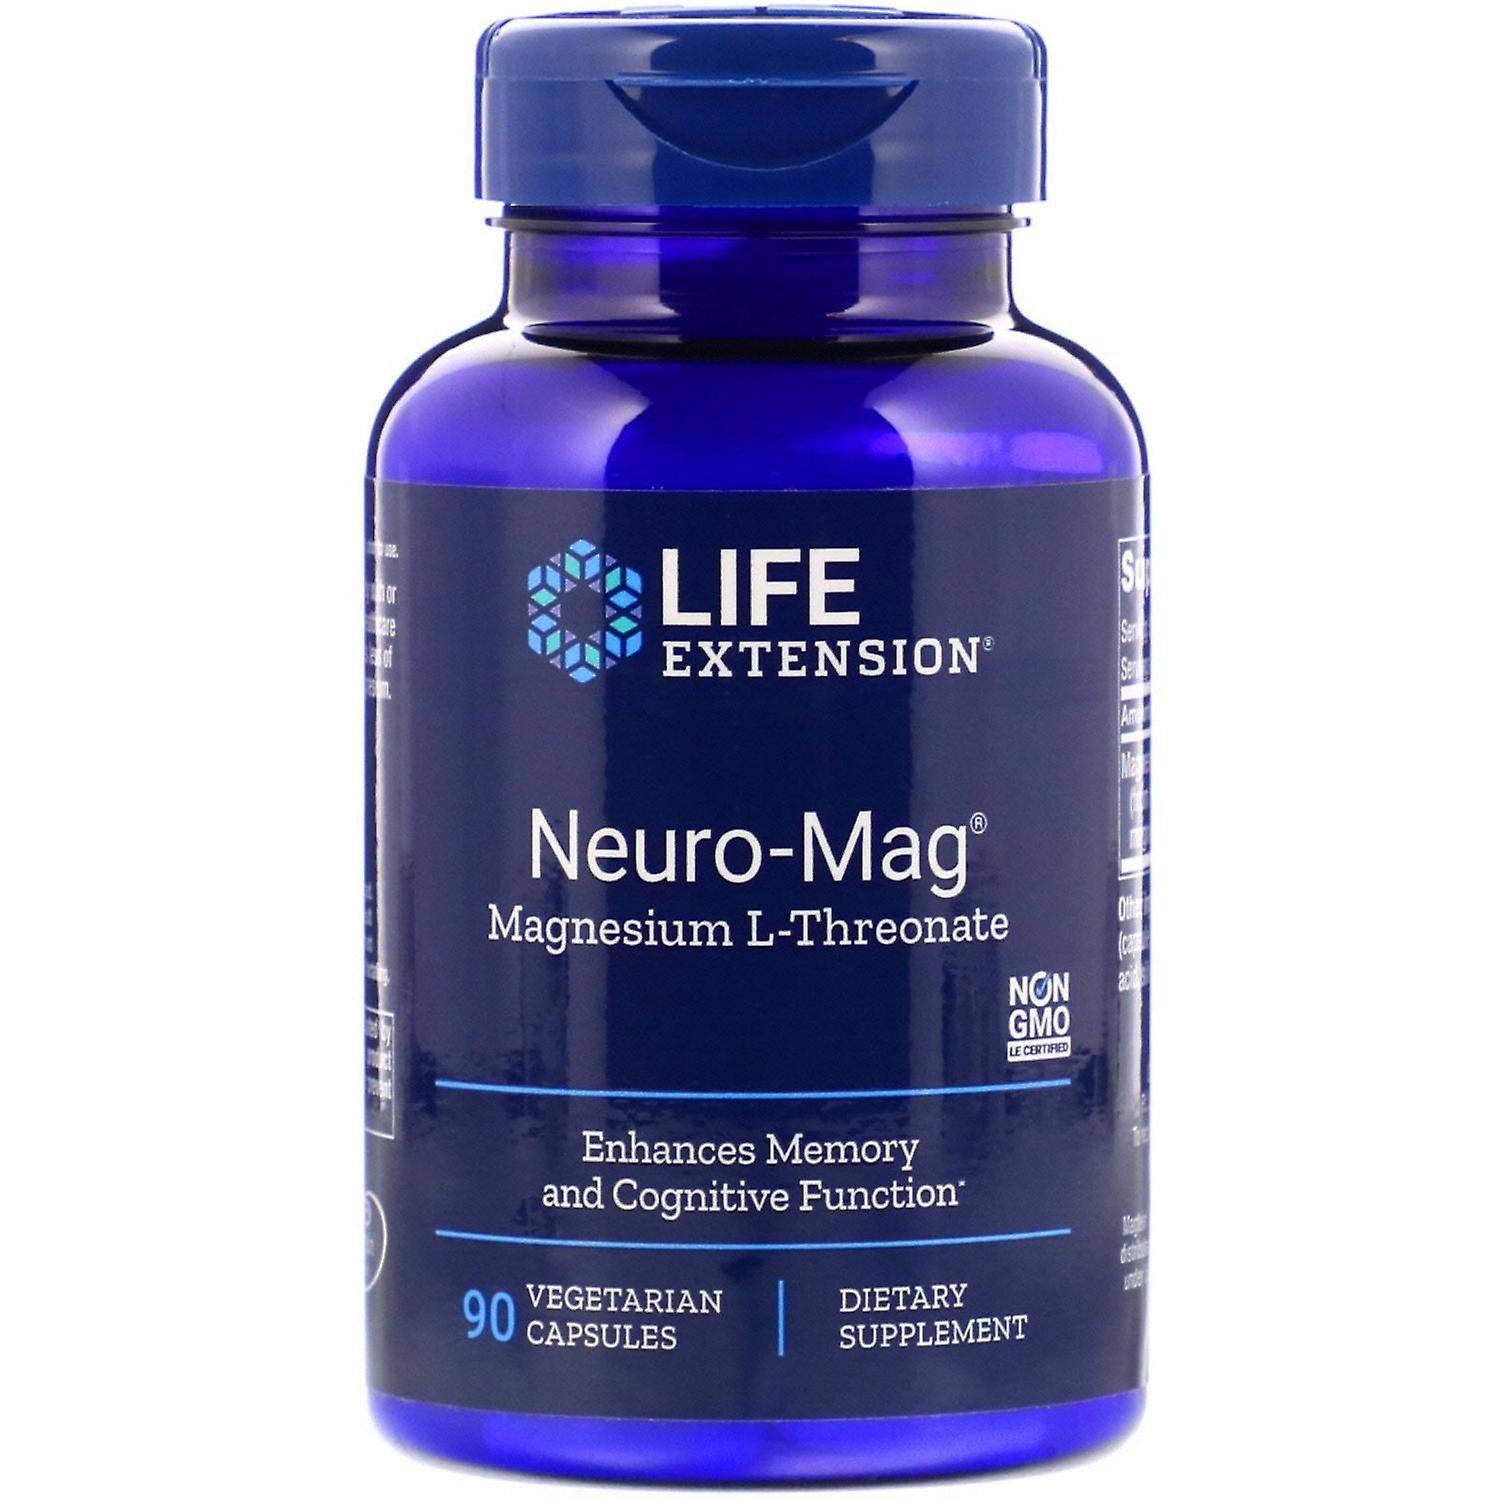 Neuro-Mag® Magnesium L-Threonate 90 Vegetarian Capsules